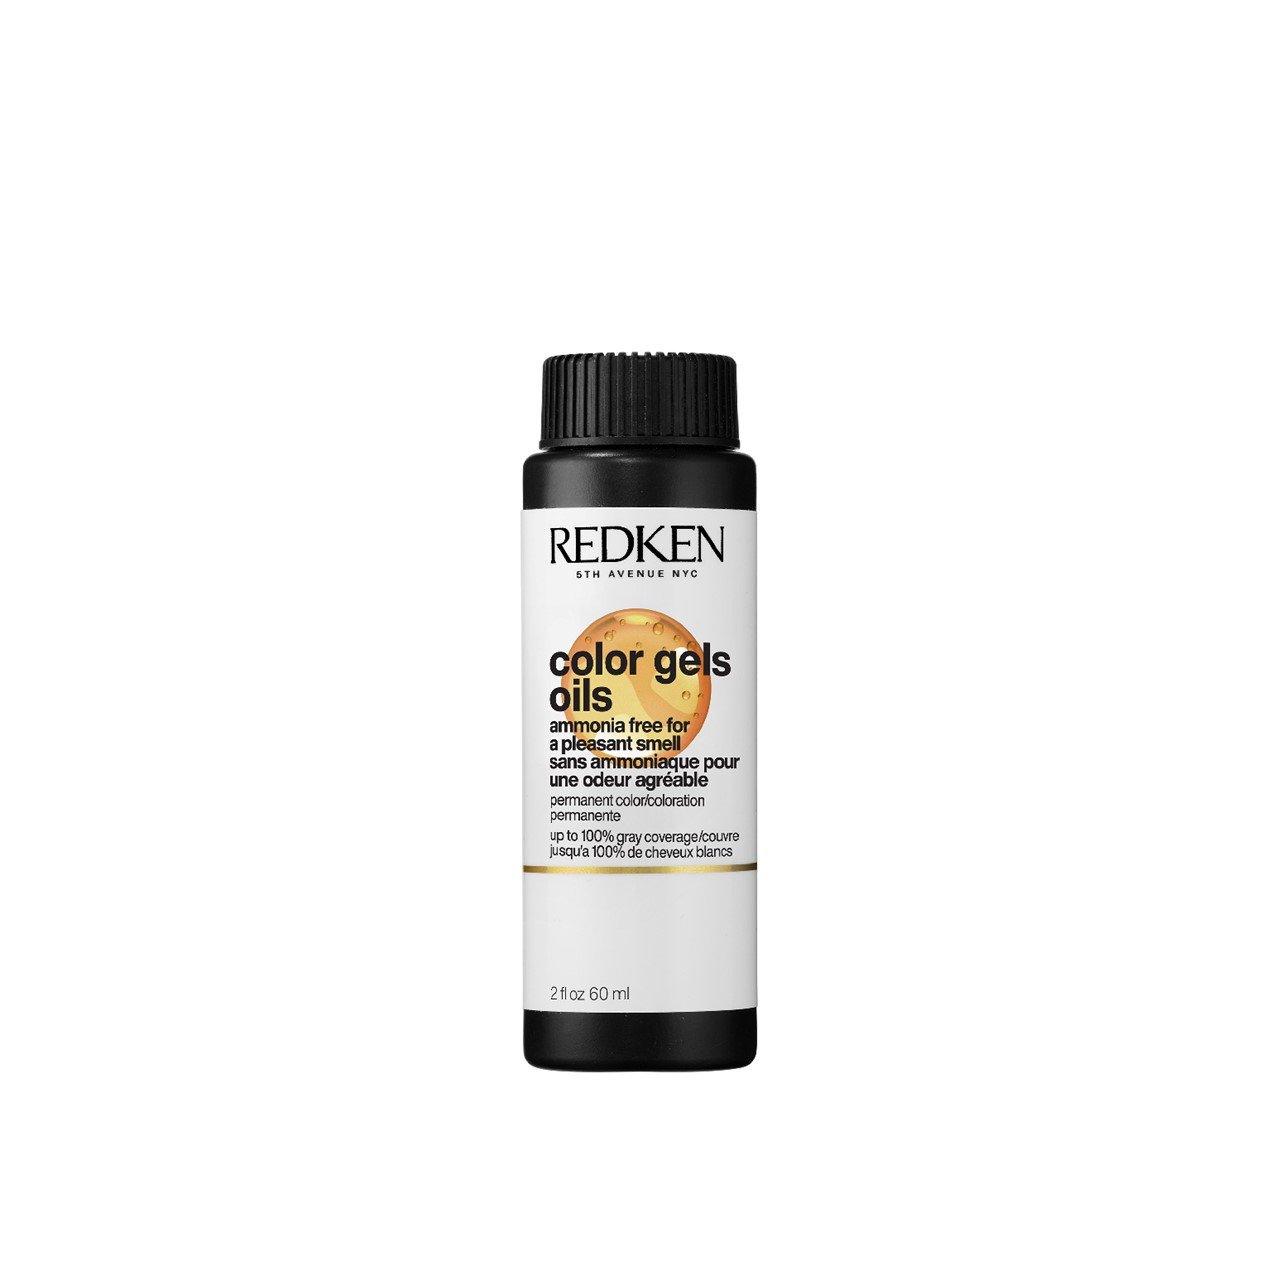 Redken Color Gels Oils 8AB Stardust Permanent Hair Dye 60ml (2.03 fl oz)